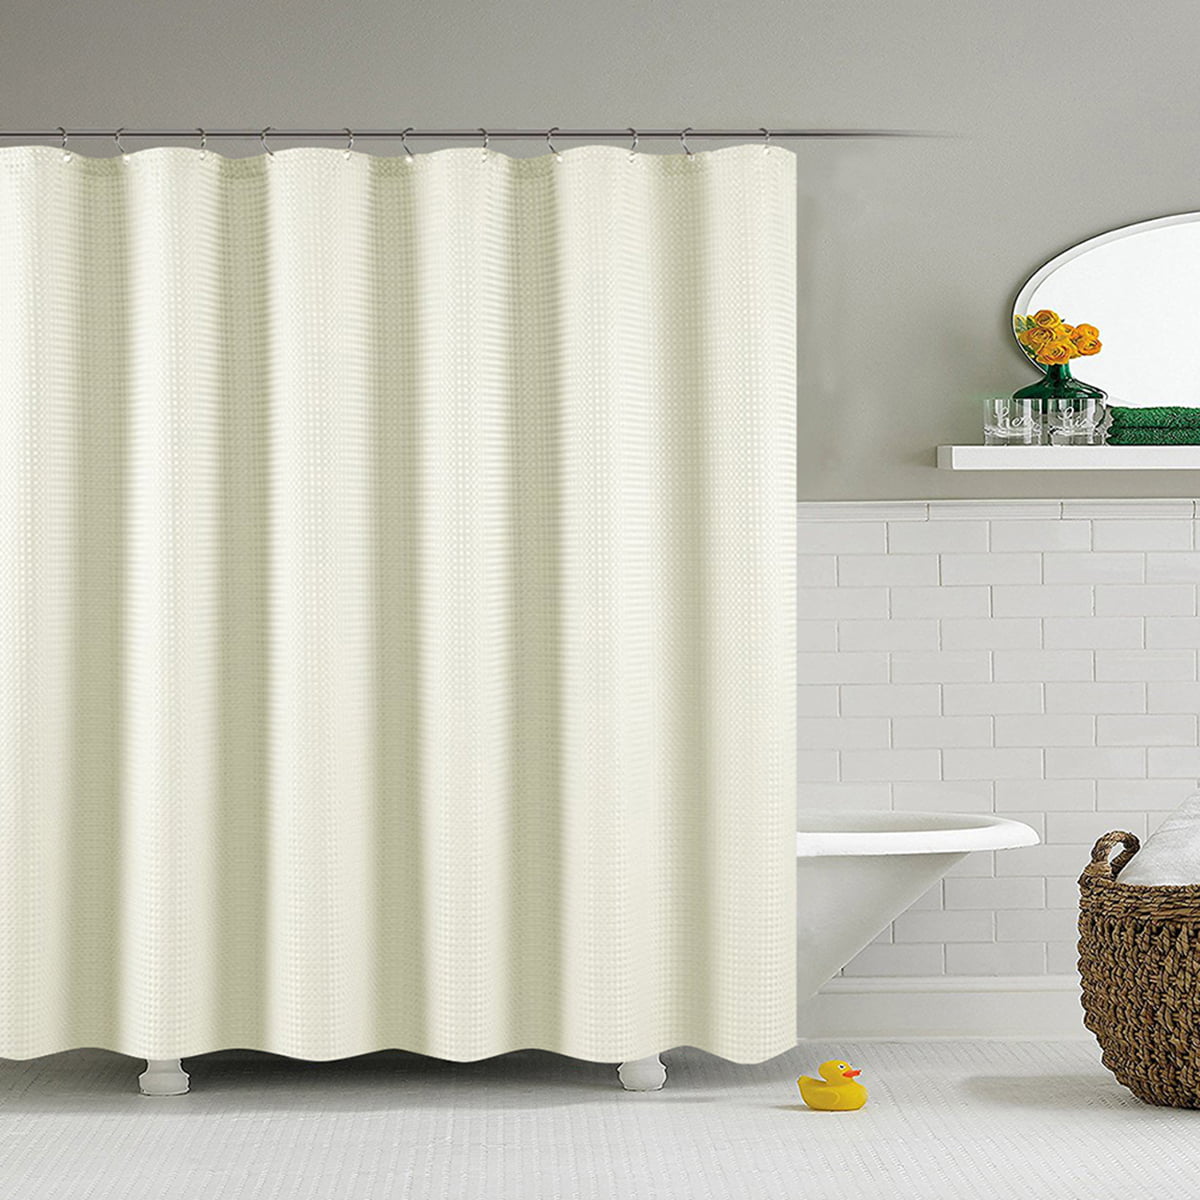 180x180cm Waterline Bathroom Plain Shower Curtain Waterproof with 12 Rings Set. 